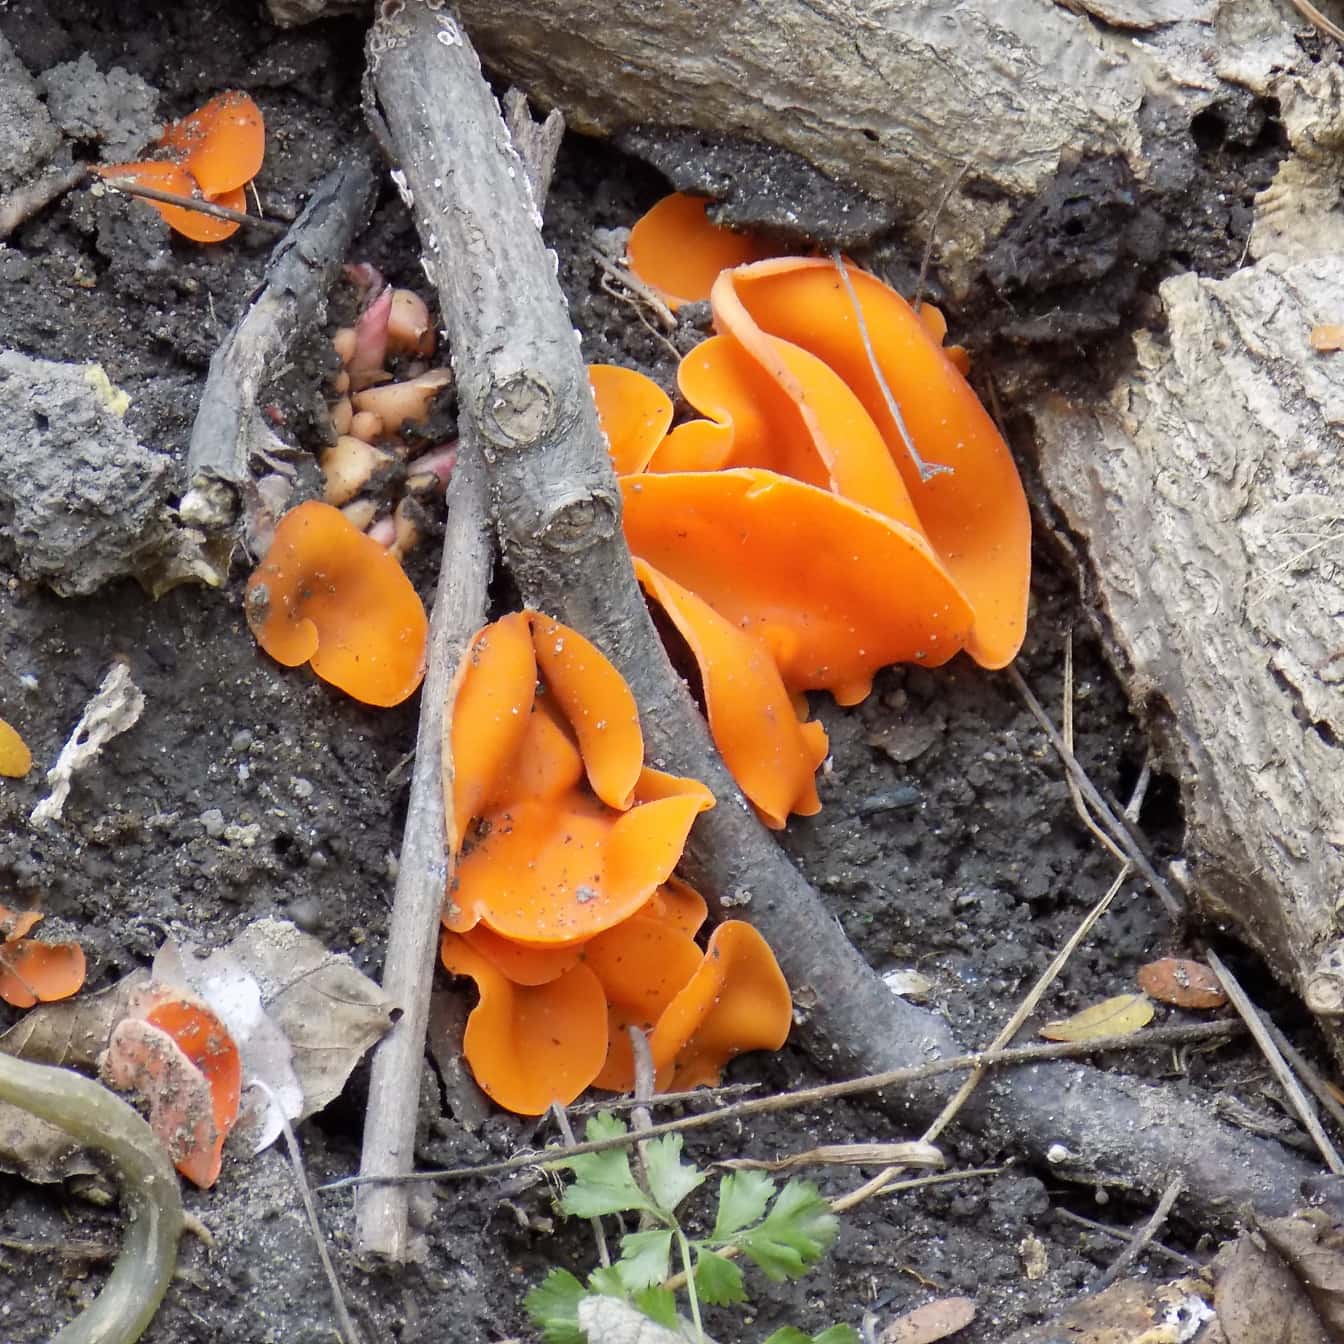 Champignon de la peau d’orange (Aleuria aurantia) champignon endémique de l’espèce